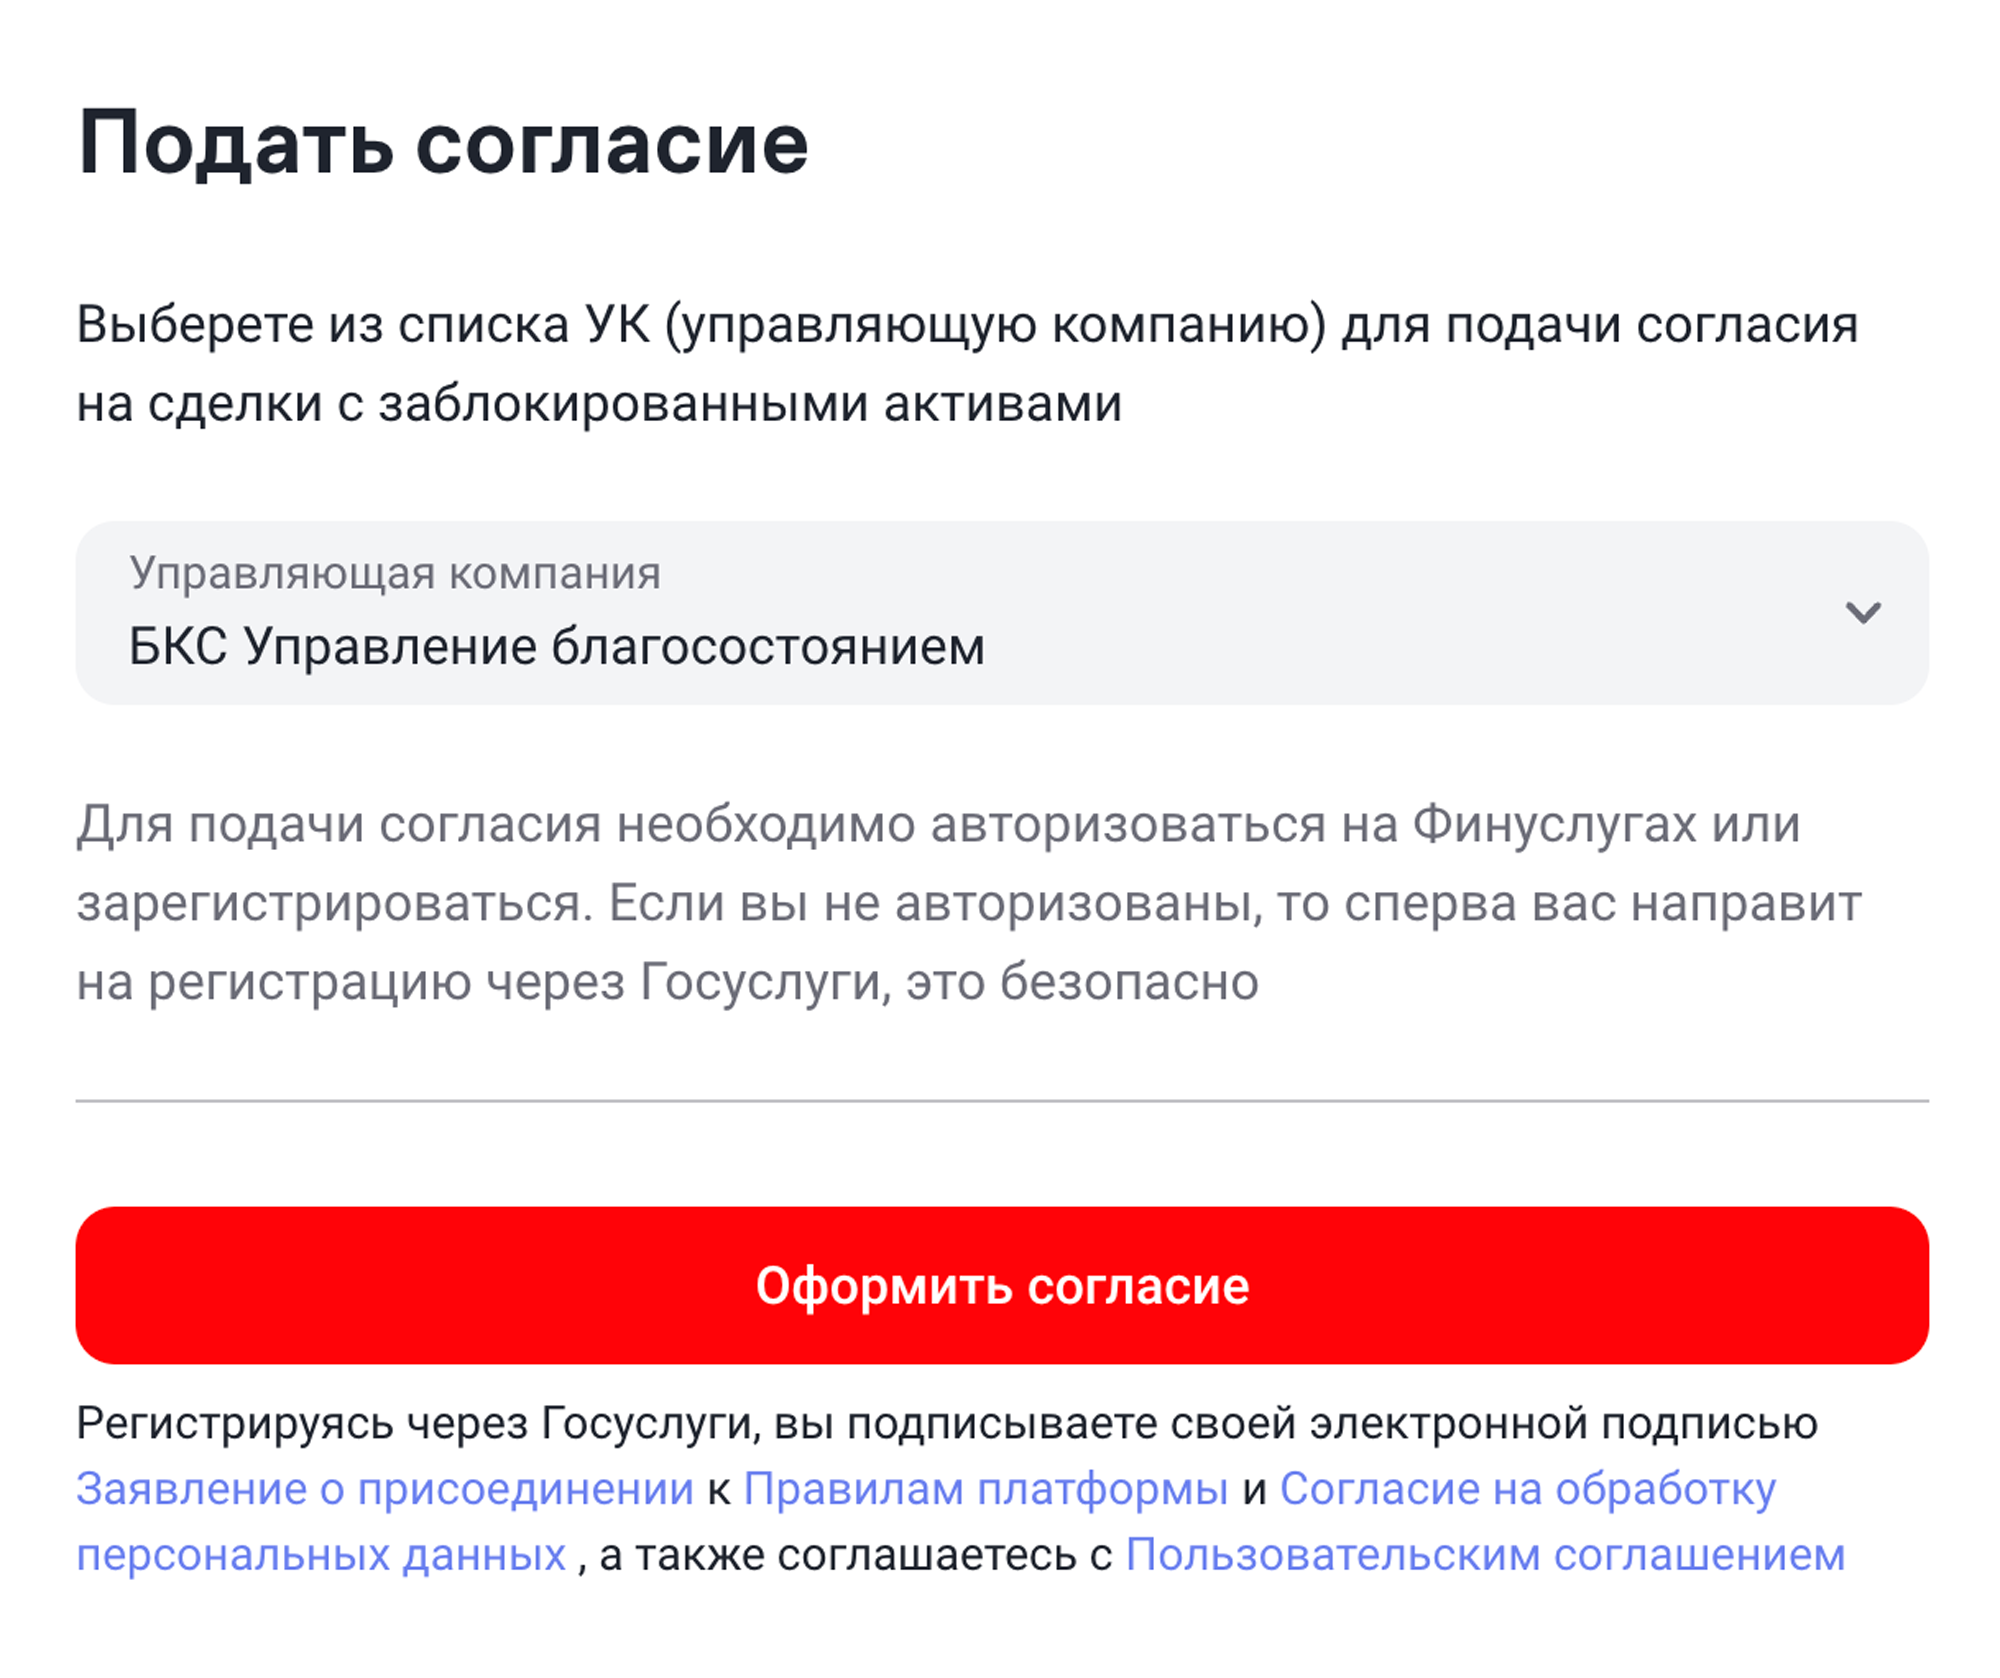 У УК «БКС ⁠—⁠ управление благосостоянием» есть сервис для подачи согласий на участие в торгах заблокированными активами. Источник: finuslugi.ru